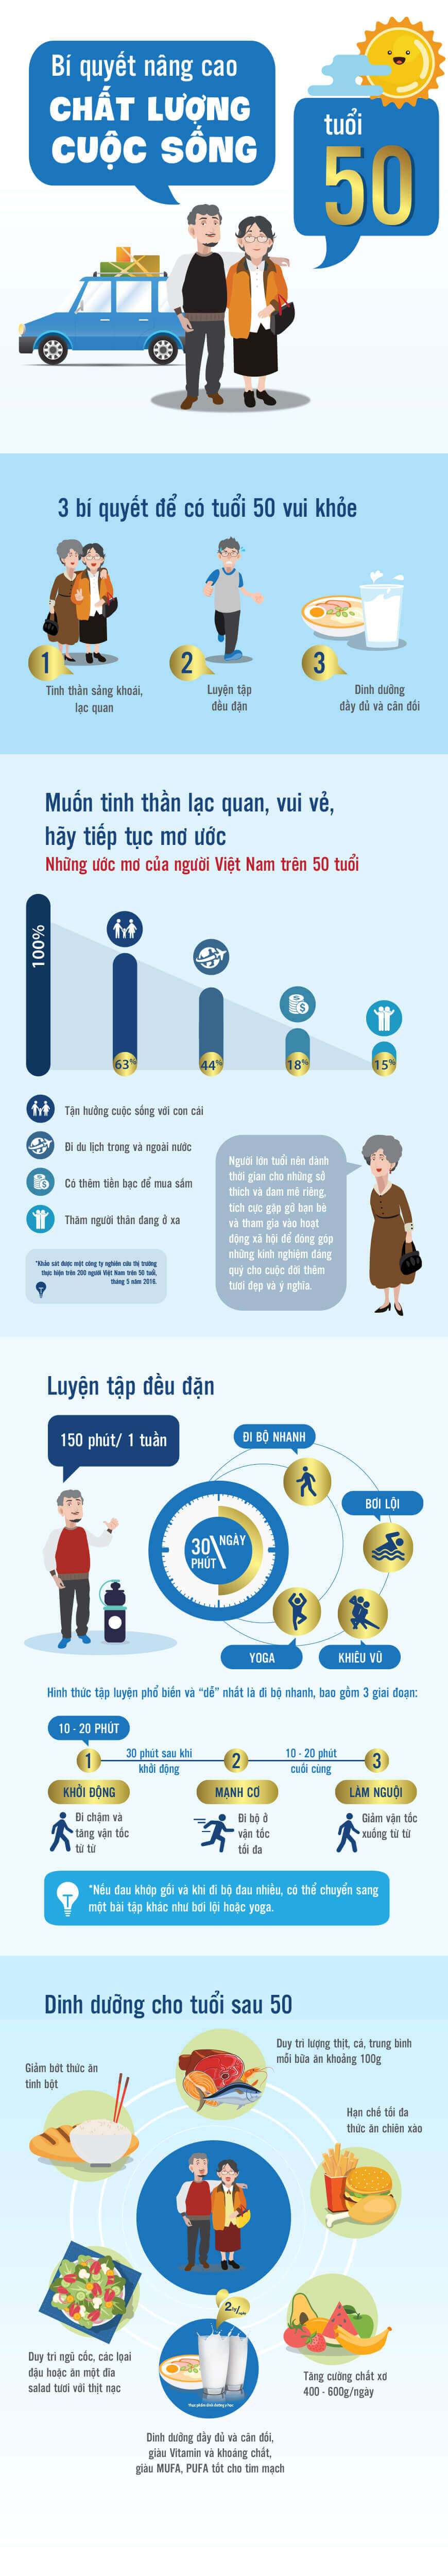 Infographic Ensure - Bí quyết nâng cao chất lượng cuộc sống tuổi 50